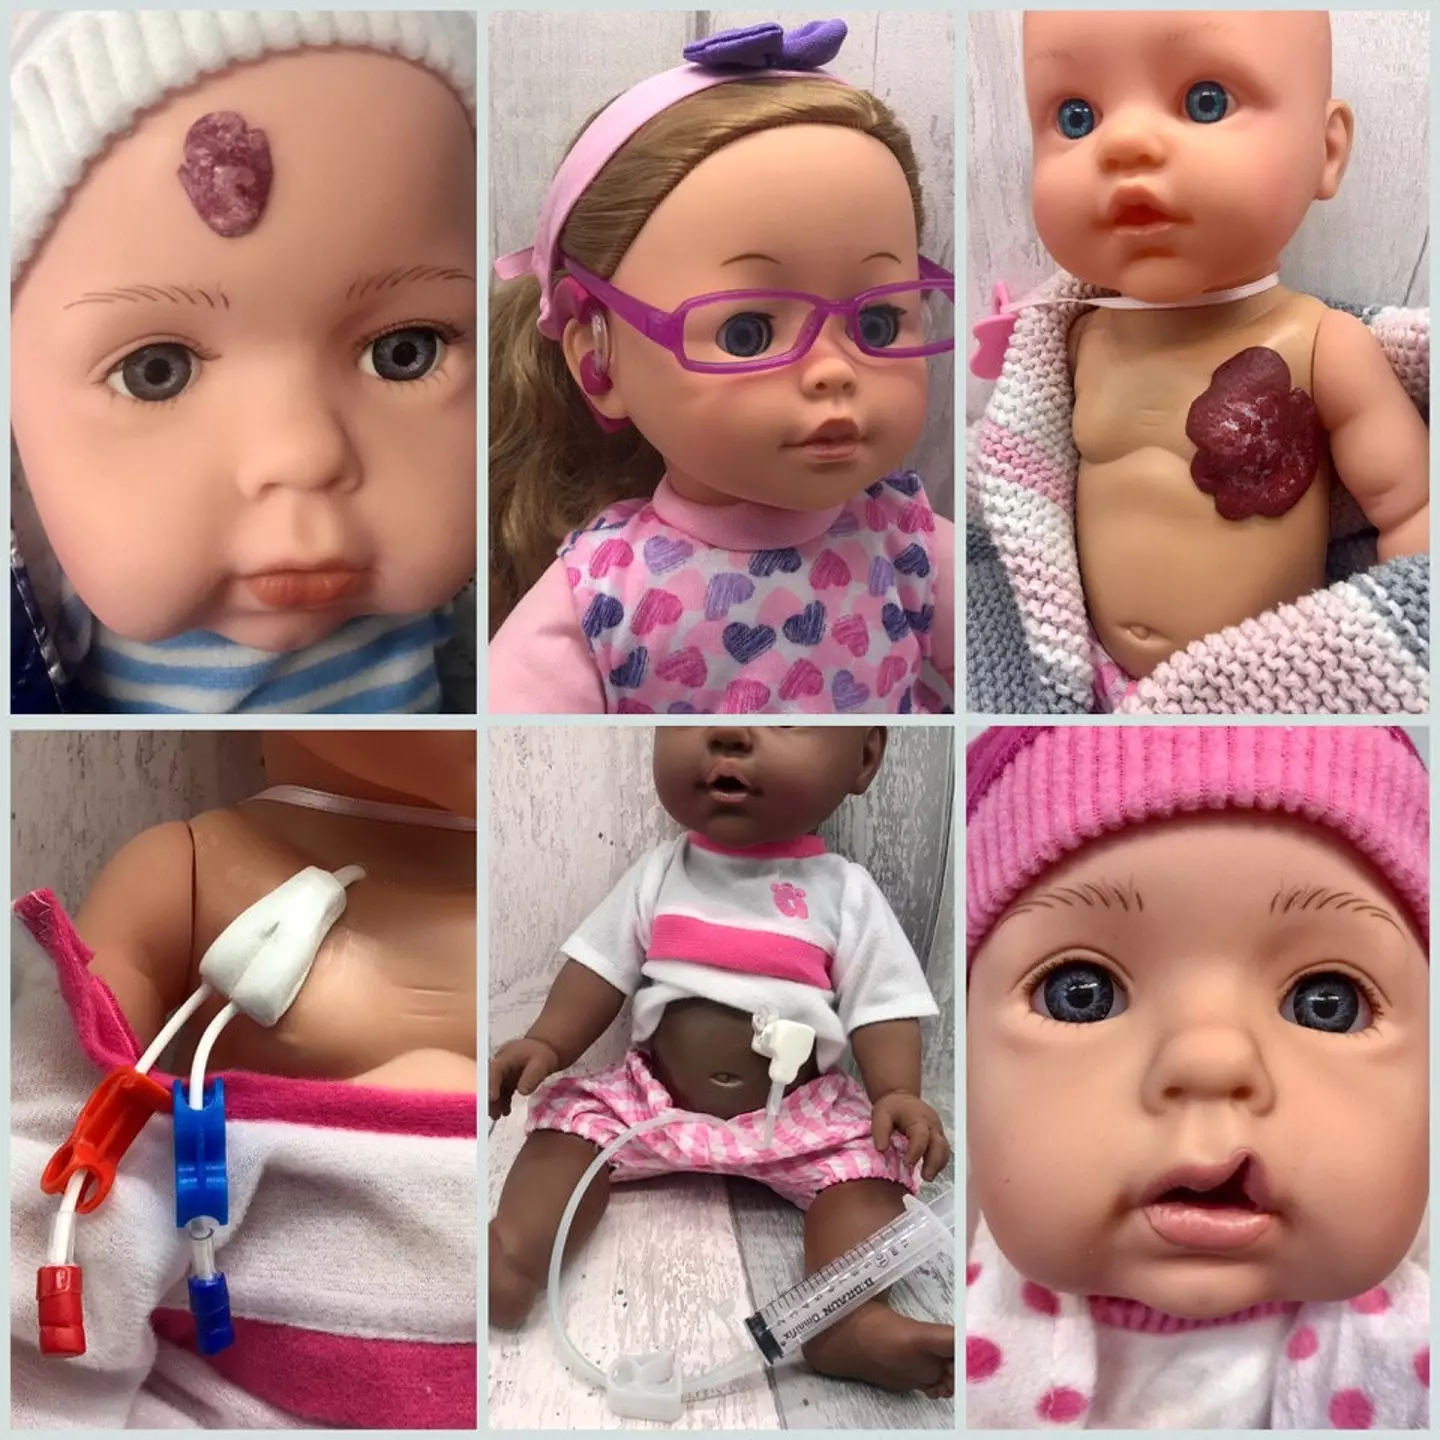 BrightEars makes inclusive dolls for children.